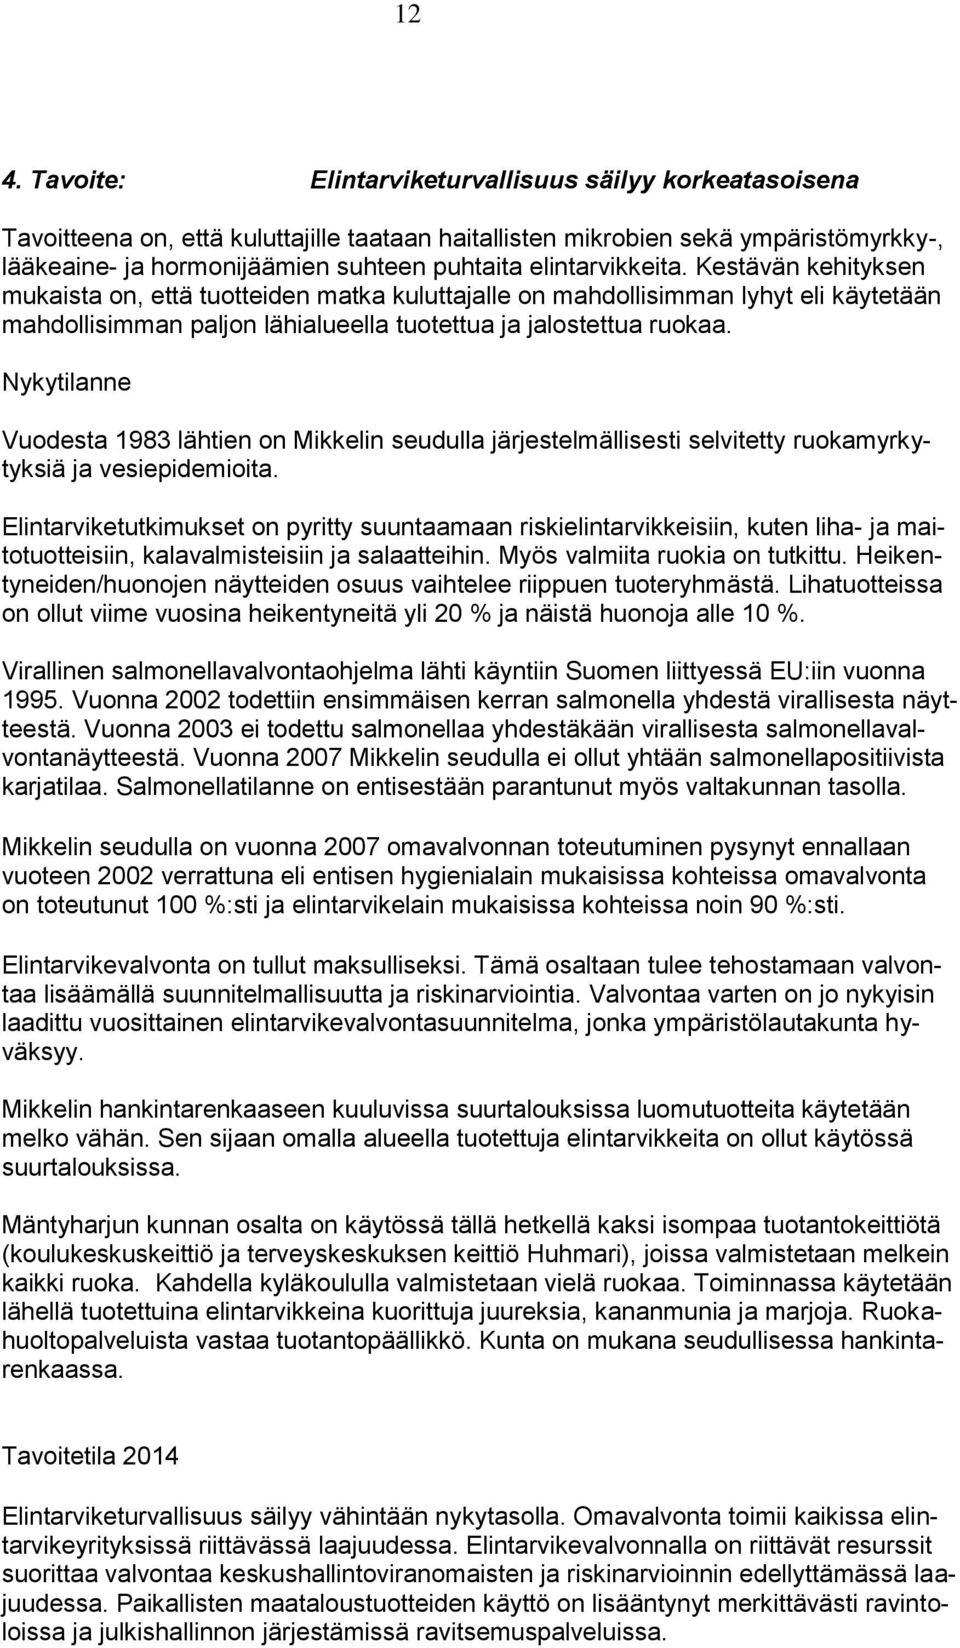 Nykytilanne Vuodesta 1983 lähtien on Mikkelin seudulla järjestelmällisesti selvitetty ruokamyrkytyksiä ja vesiepidemioita.